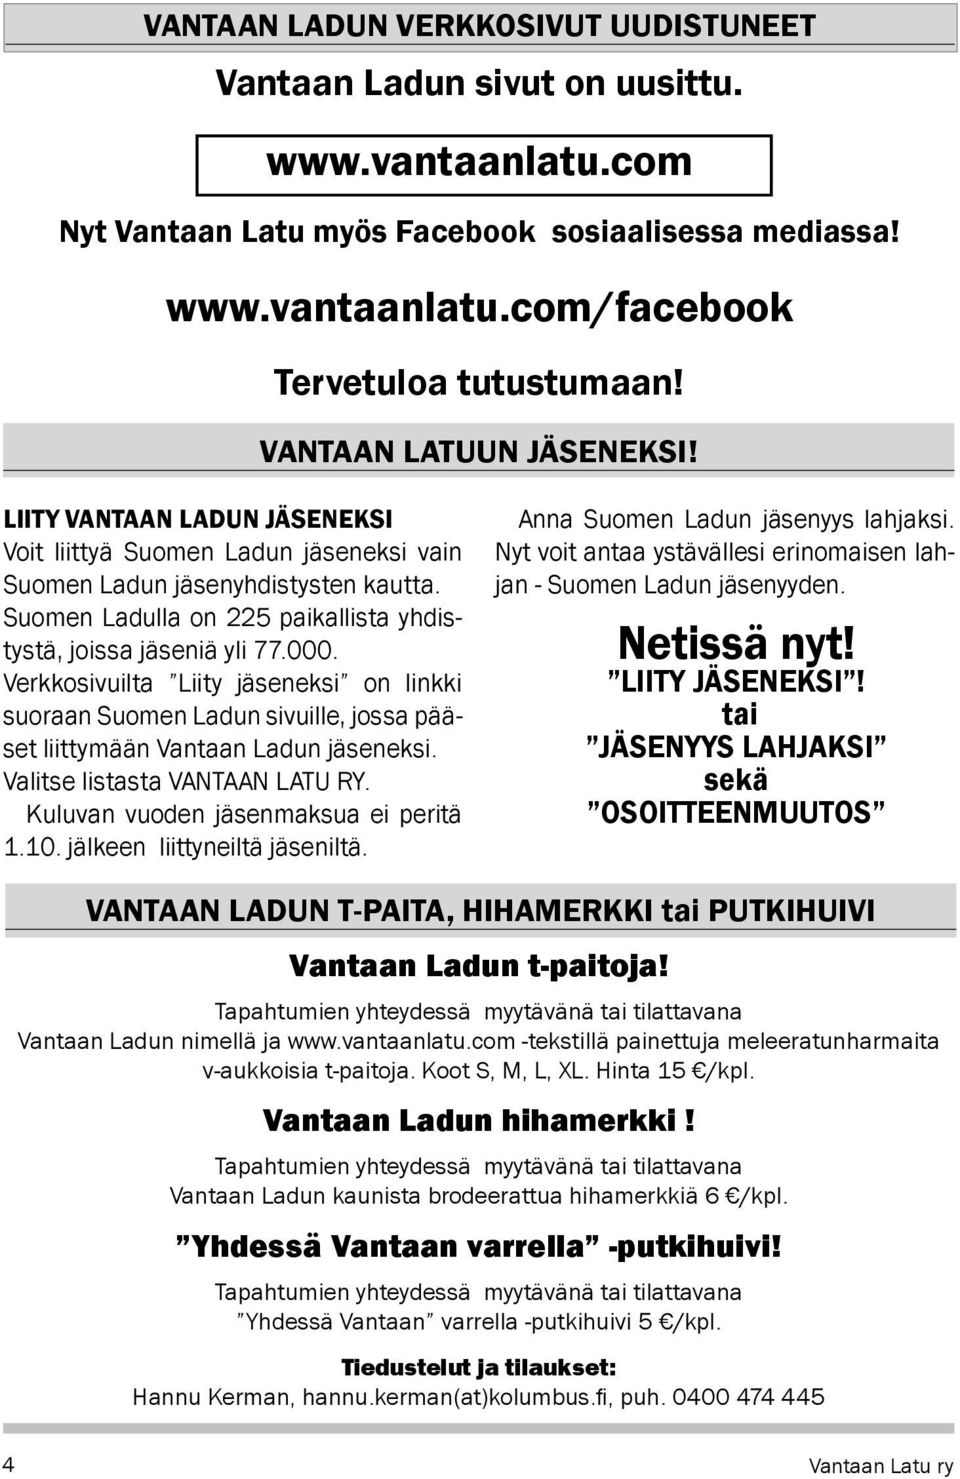 Suomen Ladulla on 225 paikallista yhdistystä, joissa jäseniä yli 77.000. Verkkosivuilta Liity jäseneksi on linkki suoraan Suomen Ladun sivuille, jossa pääset liittymään Vantaan Ladun jäseneksi.